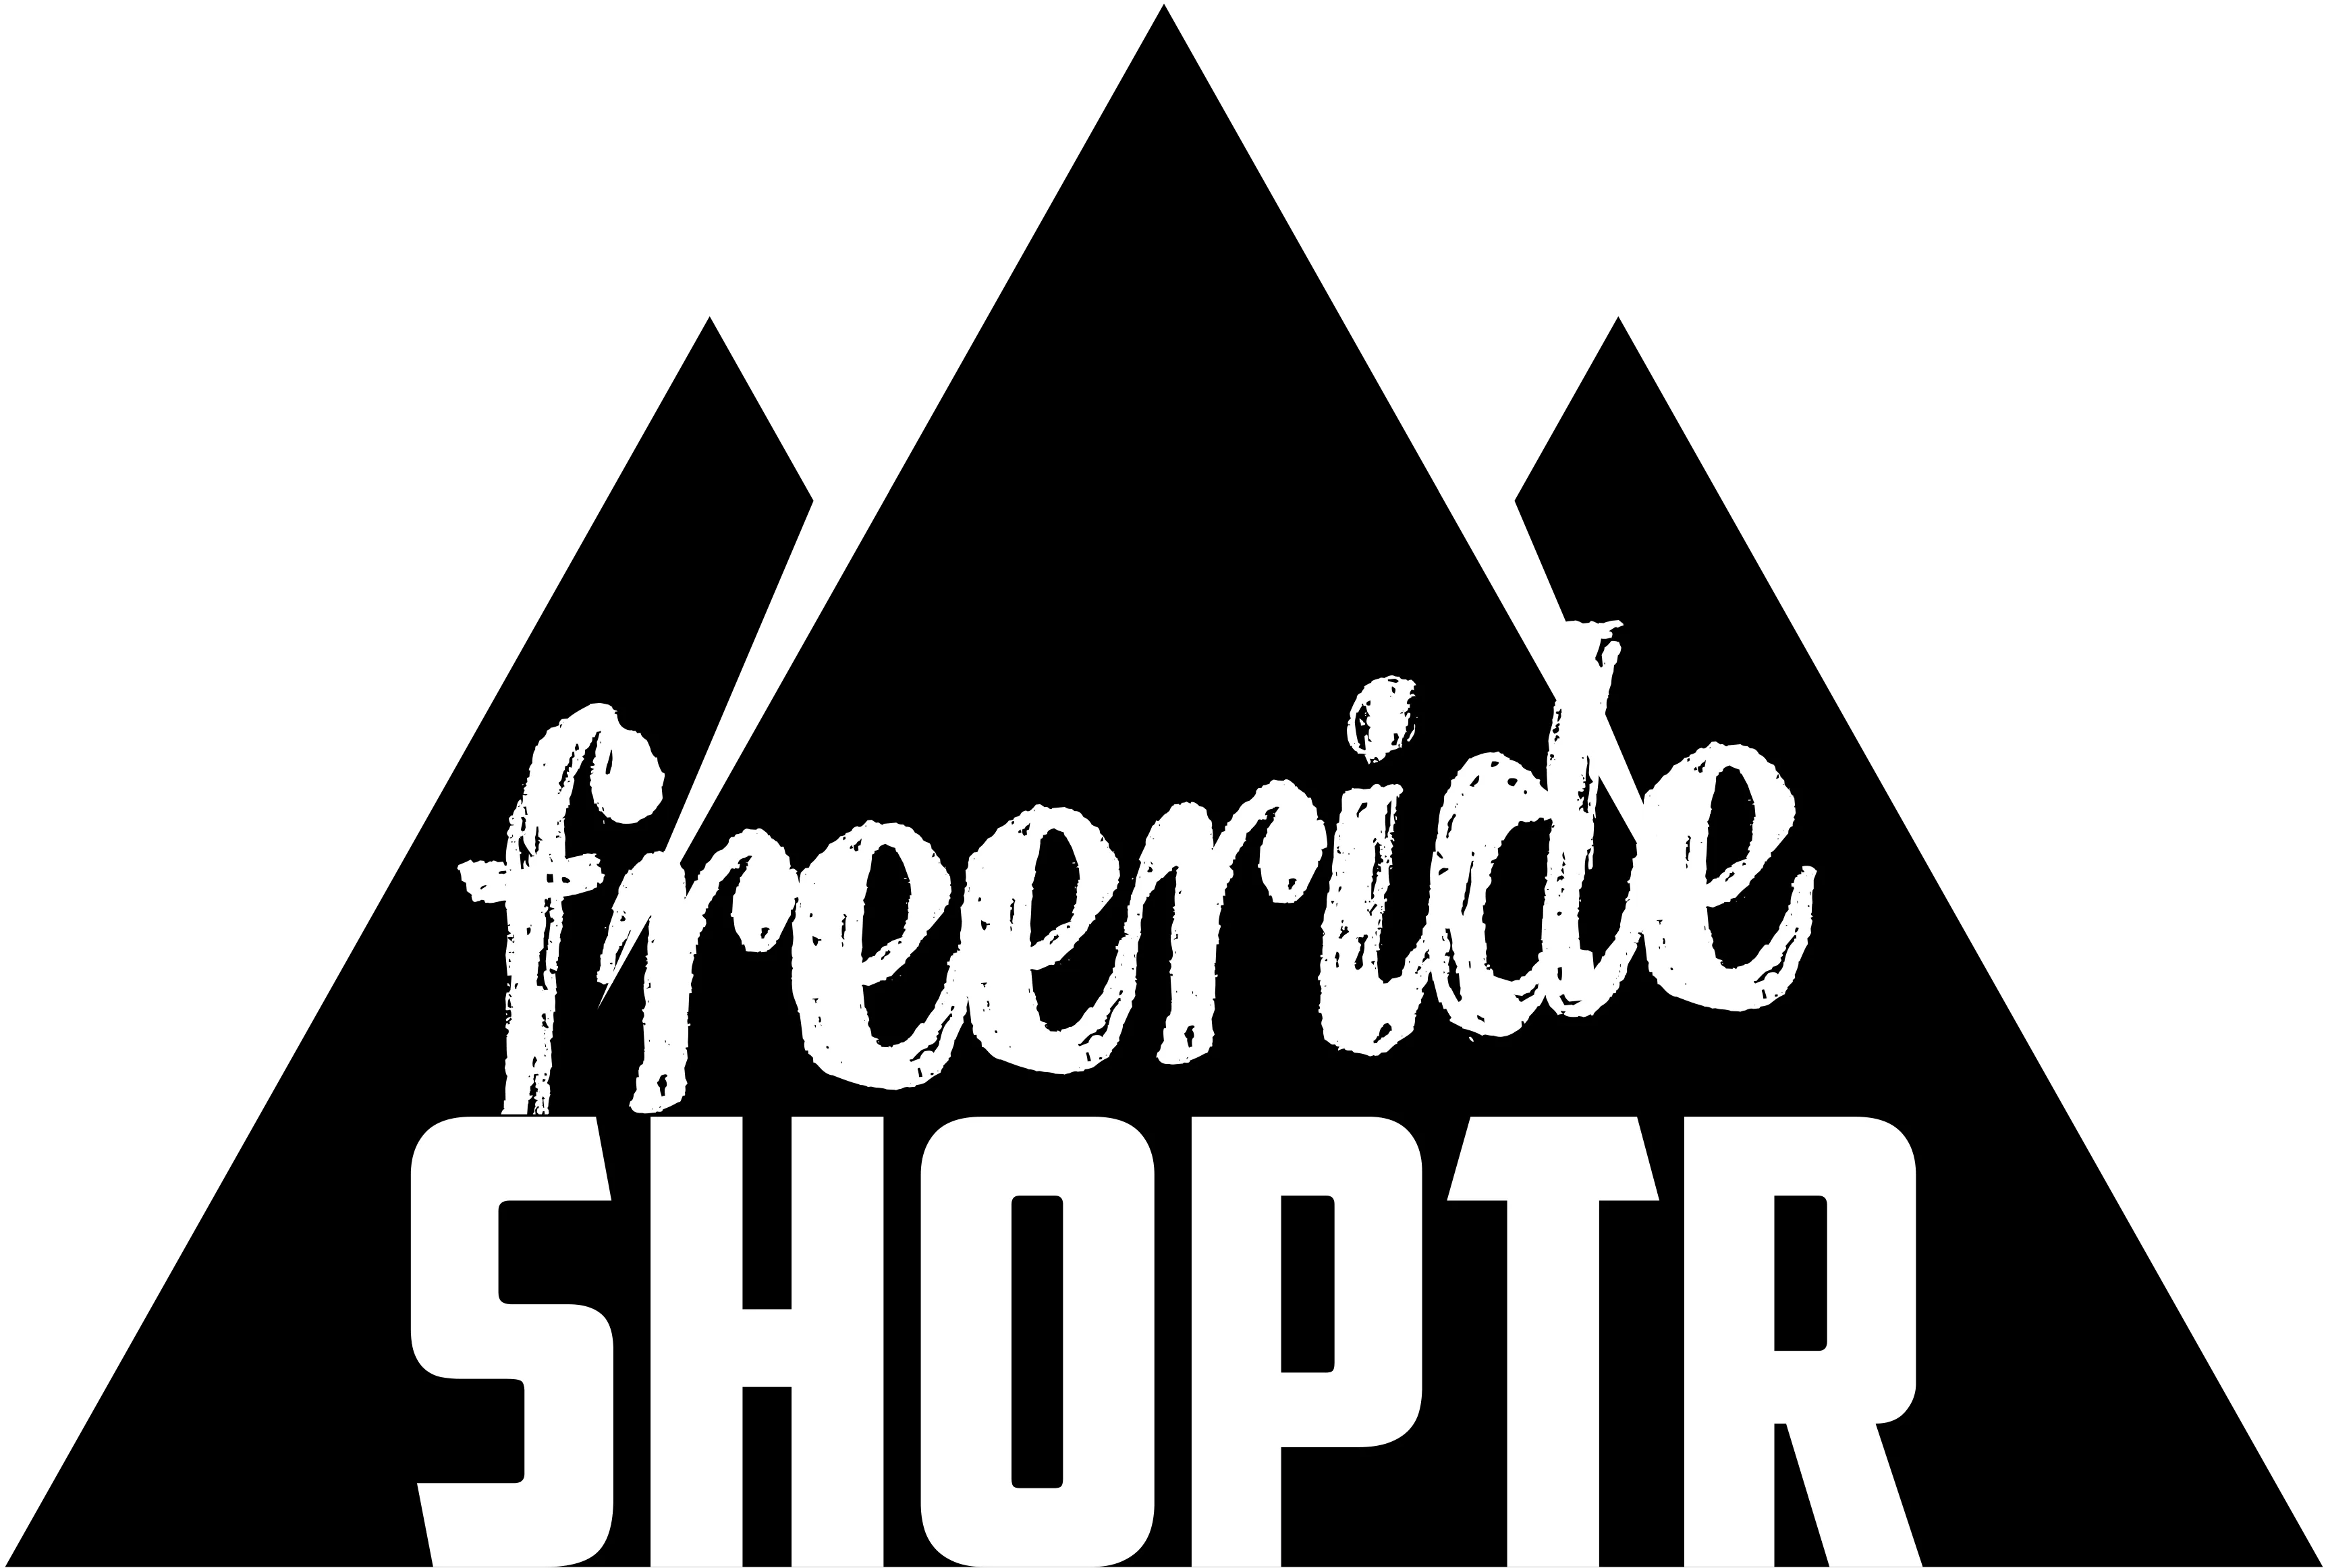  FreerideShopTR Promosyon Kodları